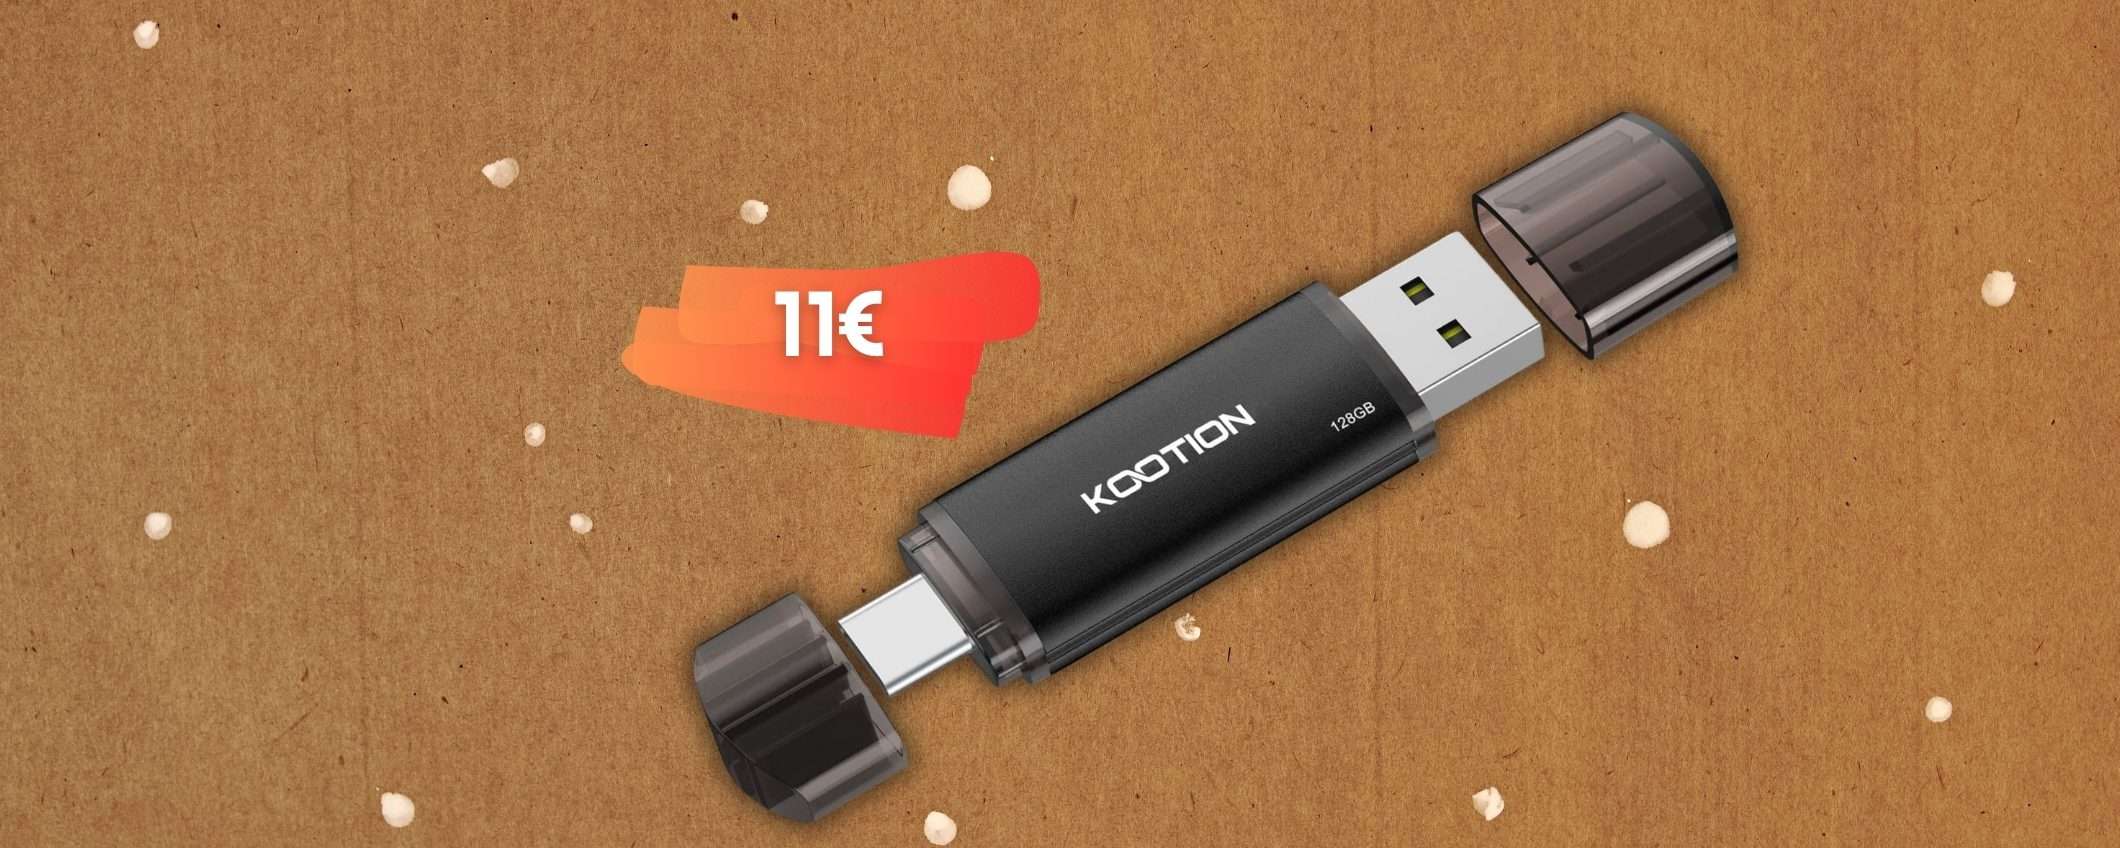 Chiavetta USB doppia: da un lato anche USB C con 128GB di memoria, 11€